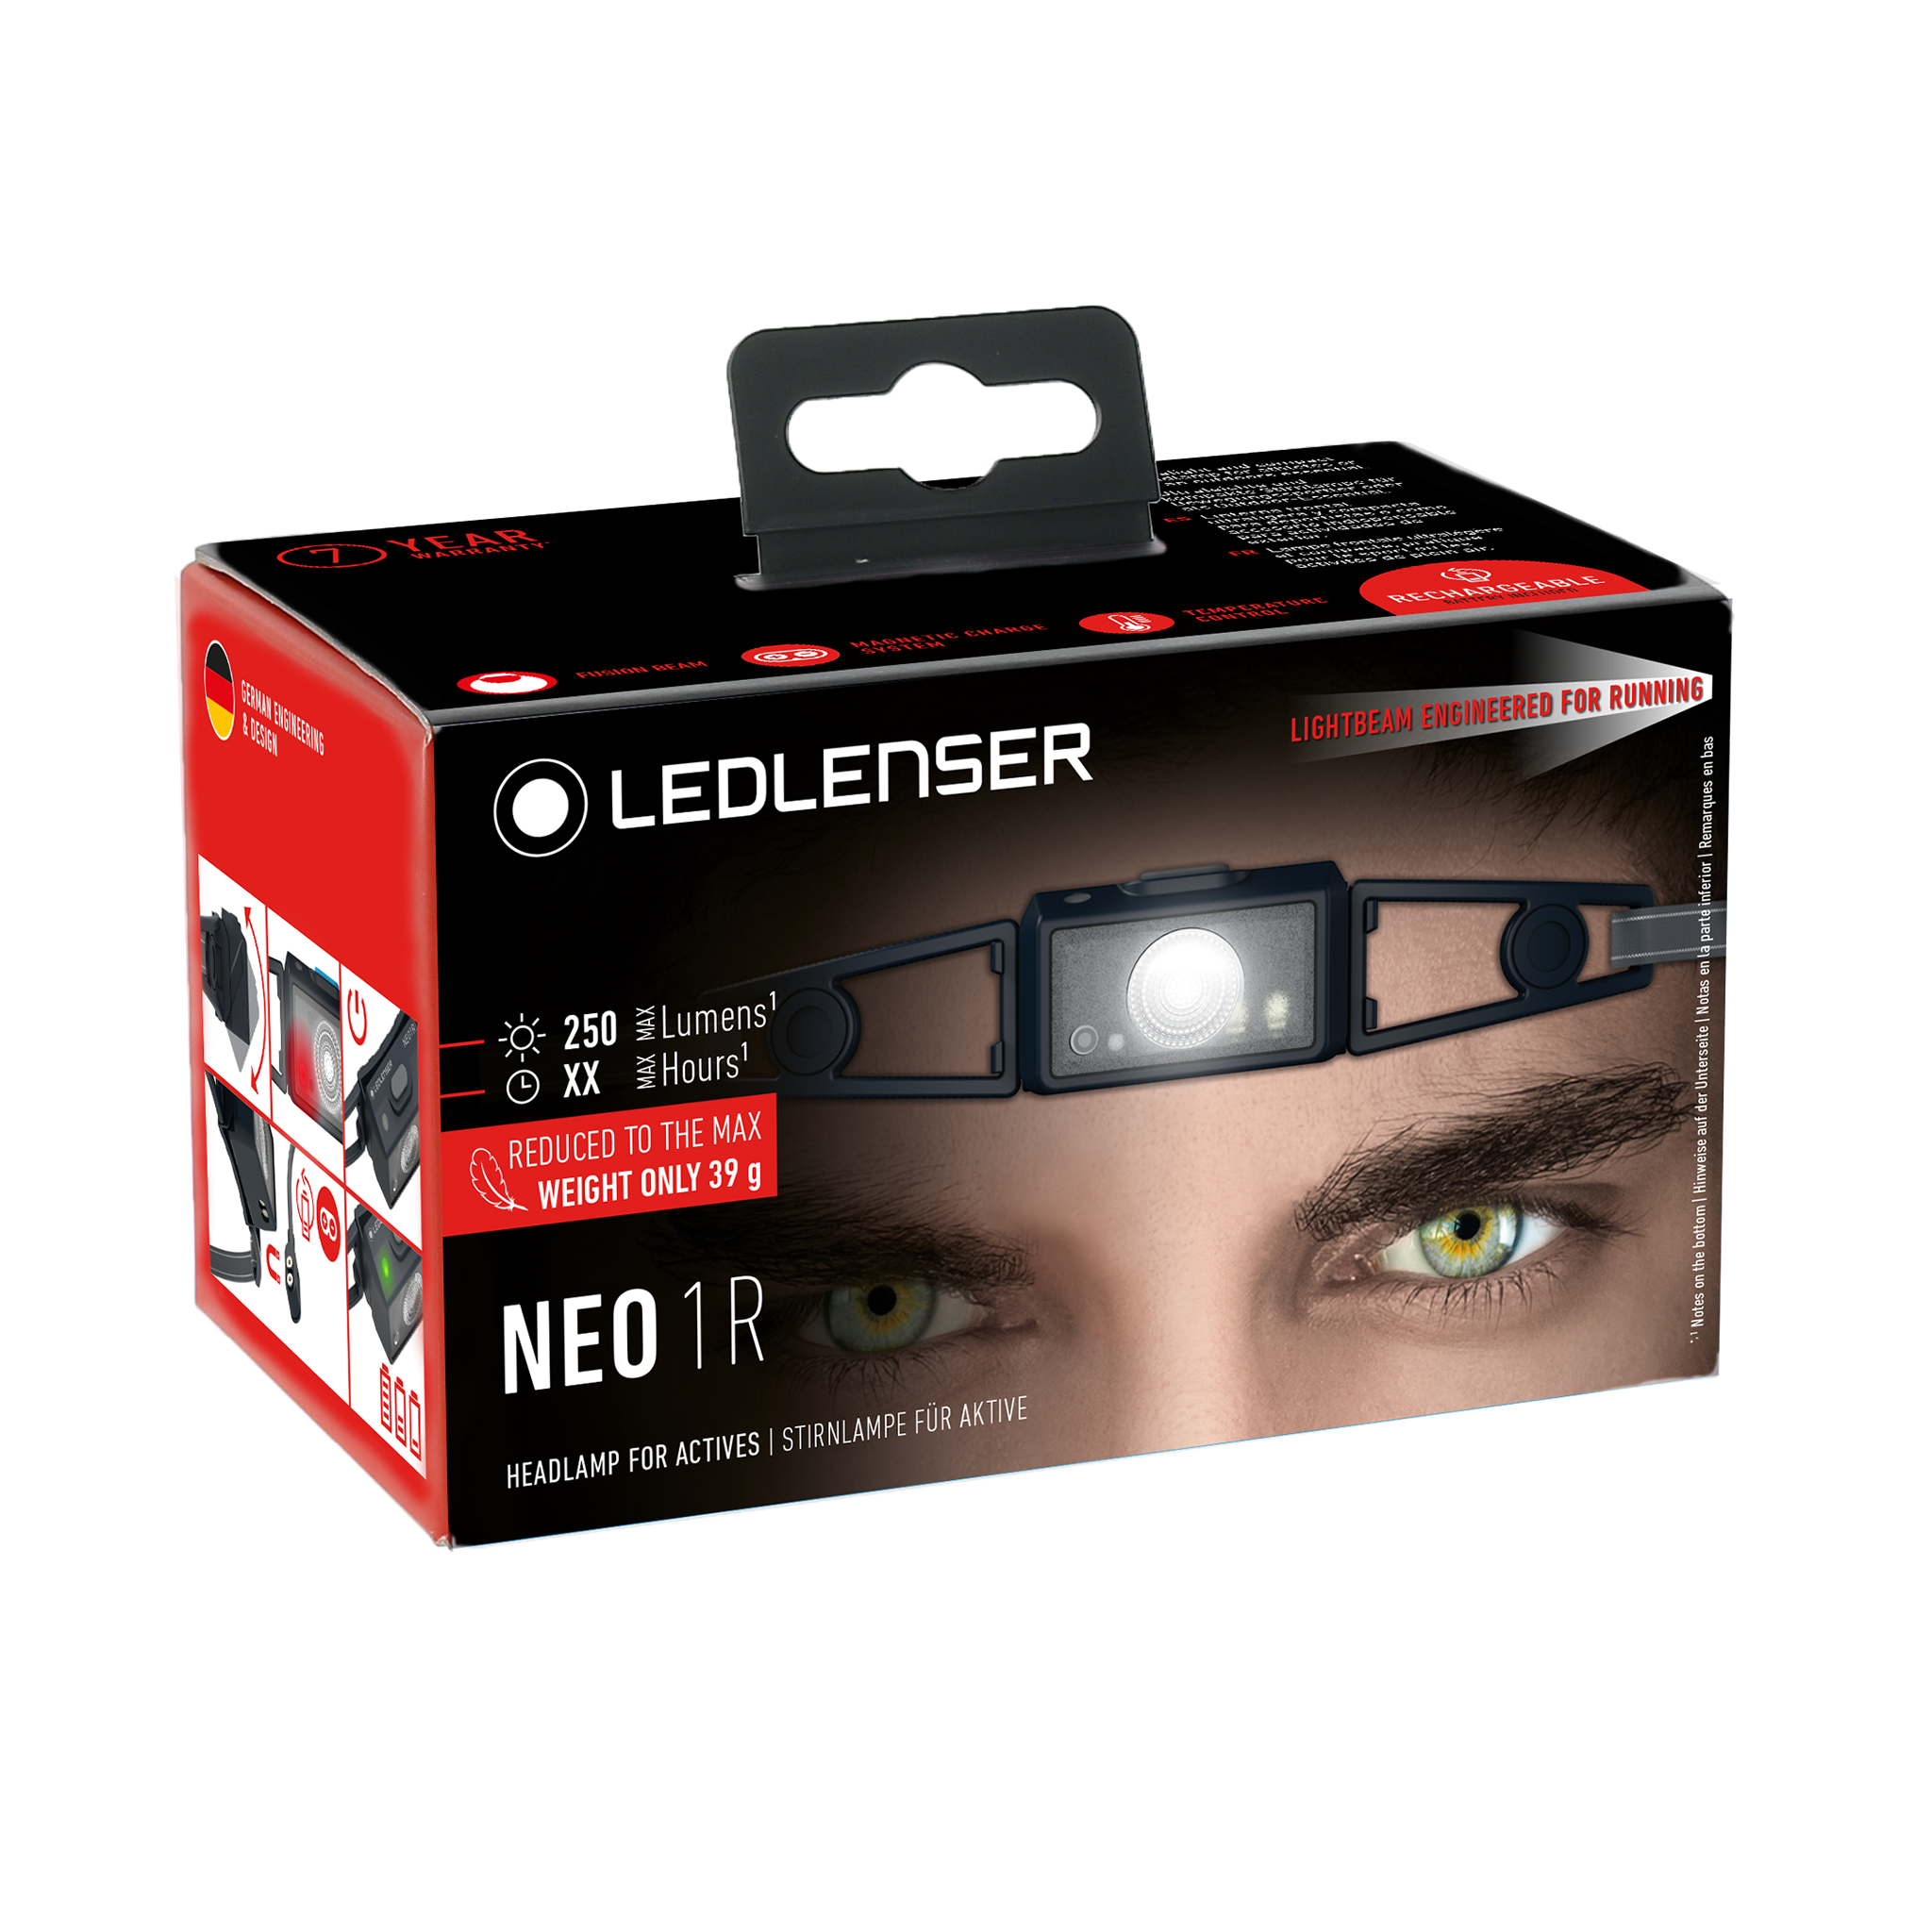 Ledlenser NEO1R Running Headlamp